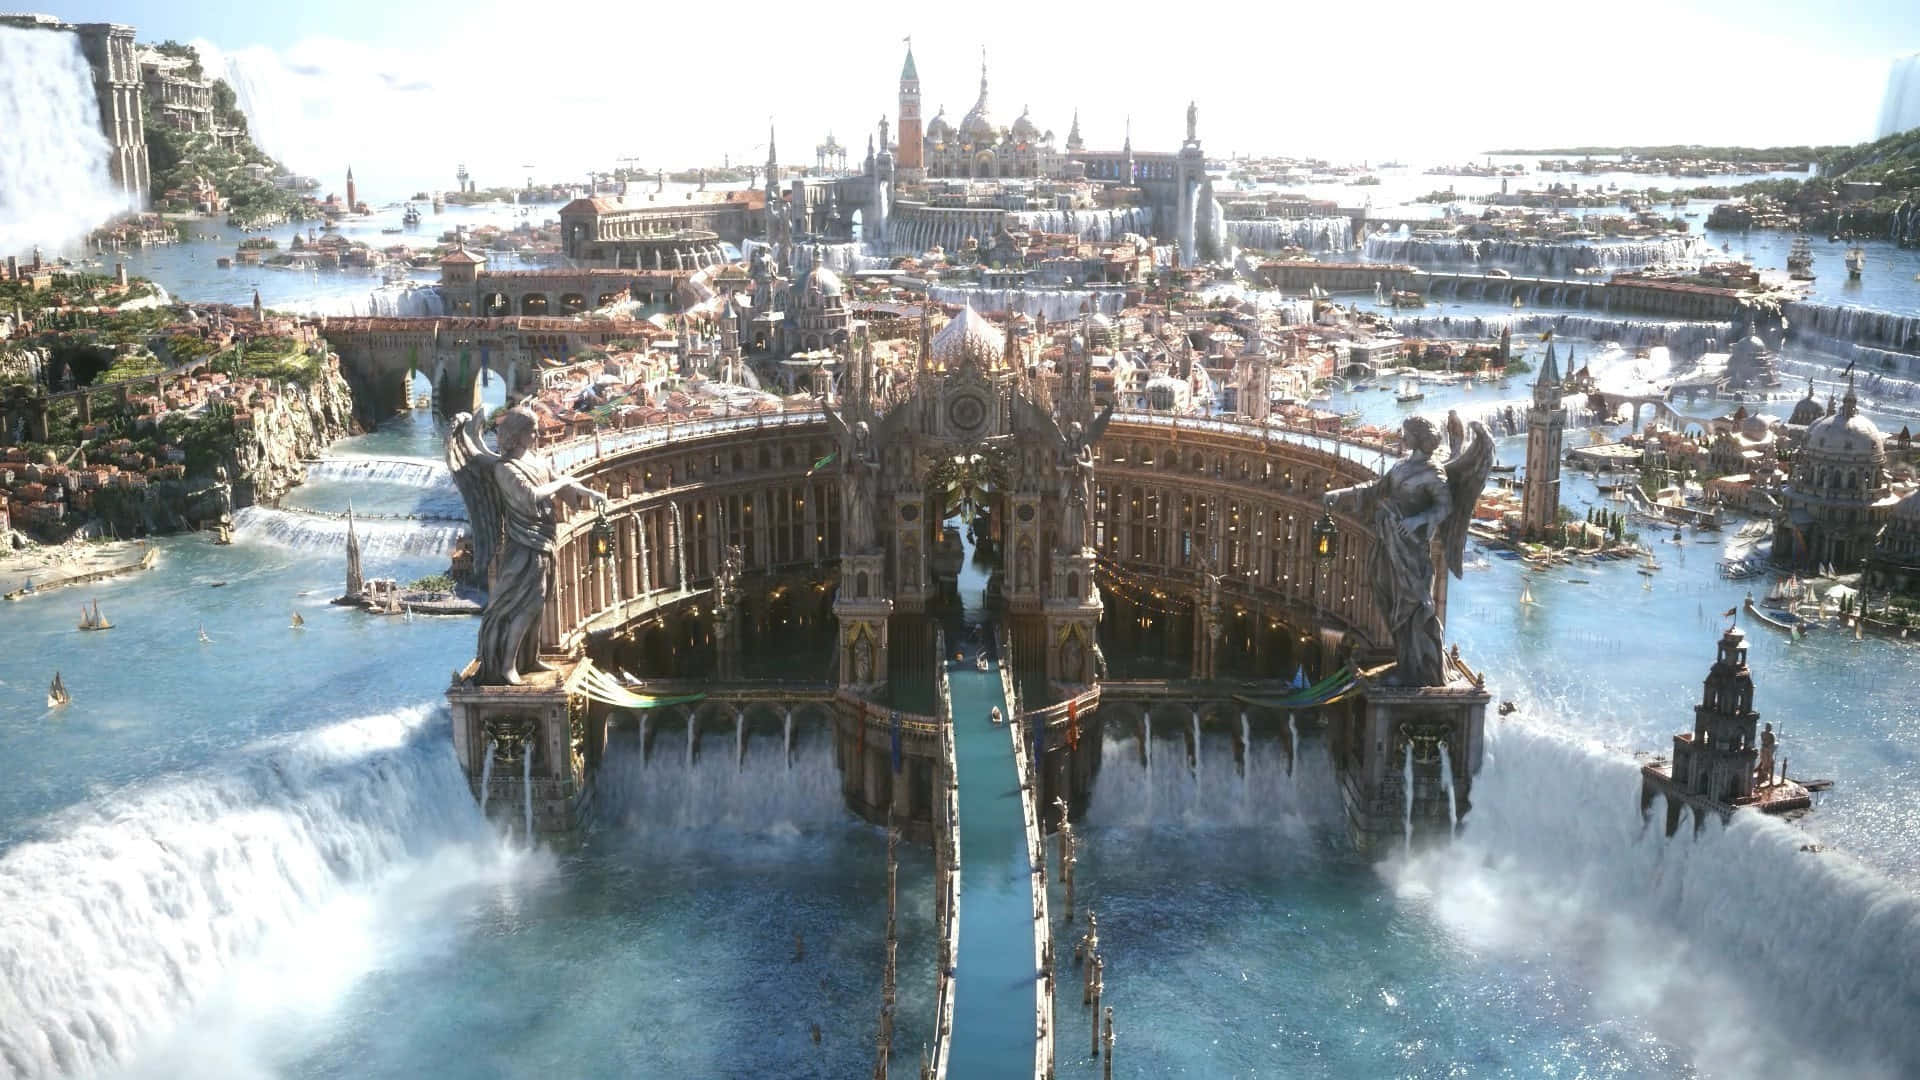 Altissiastadt Final Fantasy Xv Hintergrund